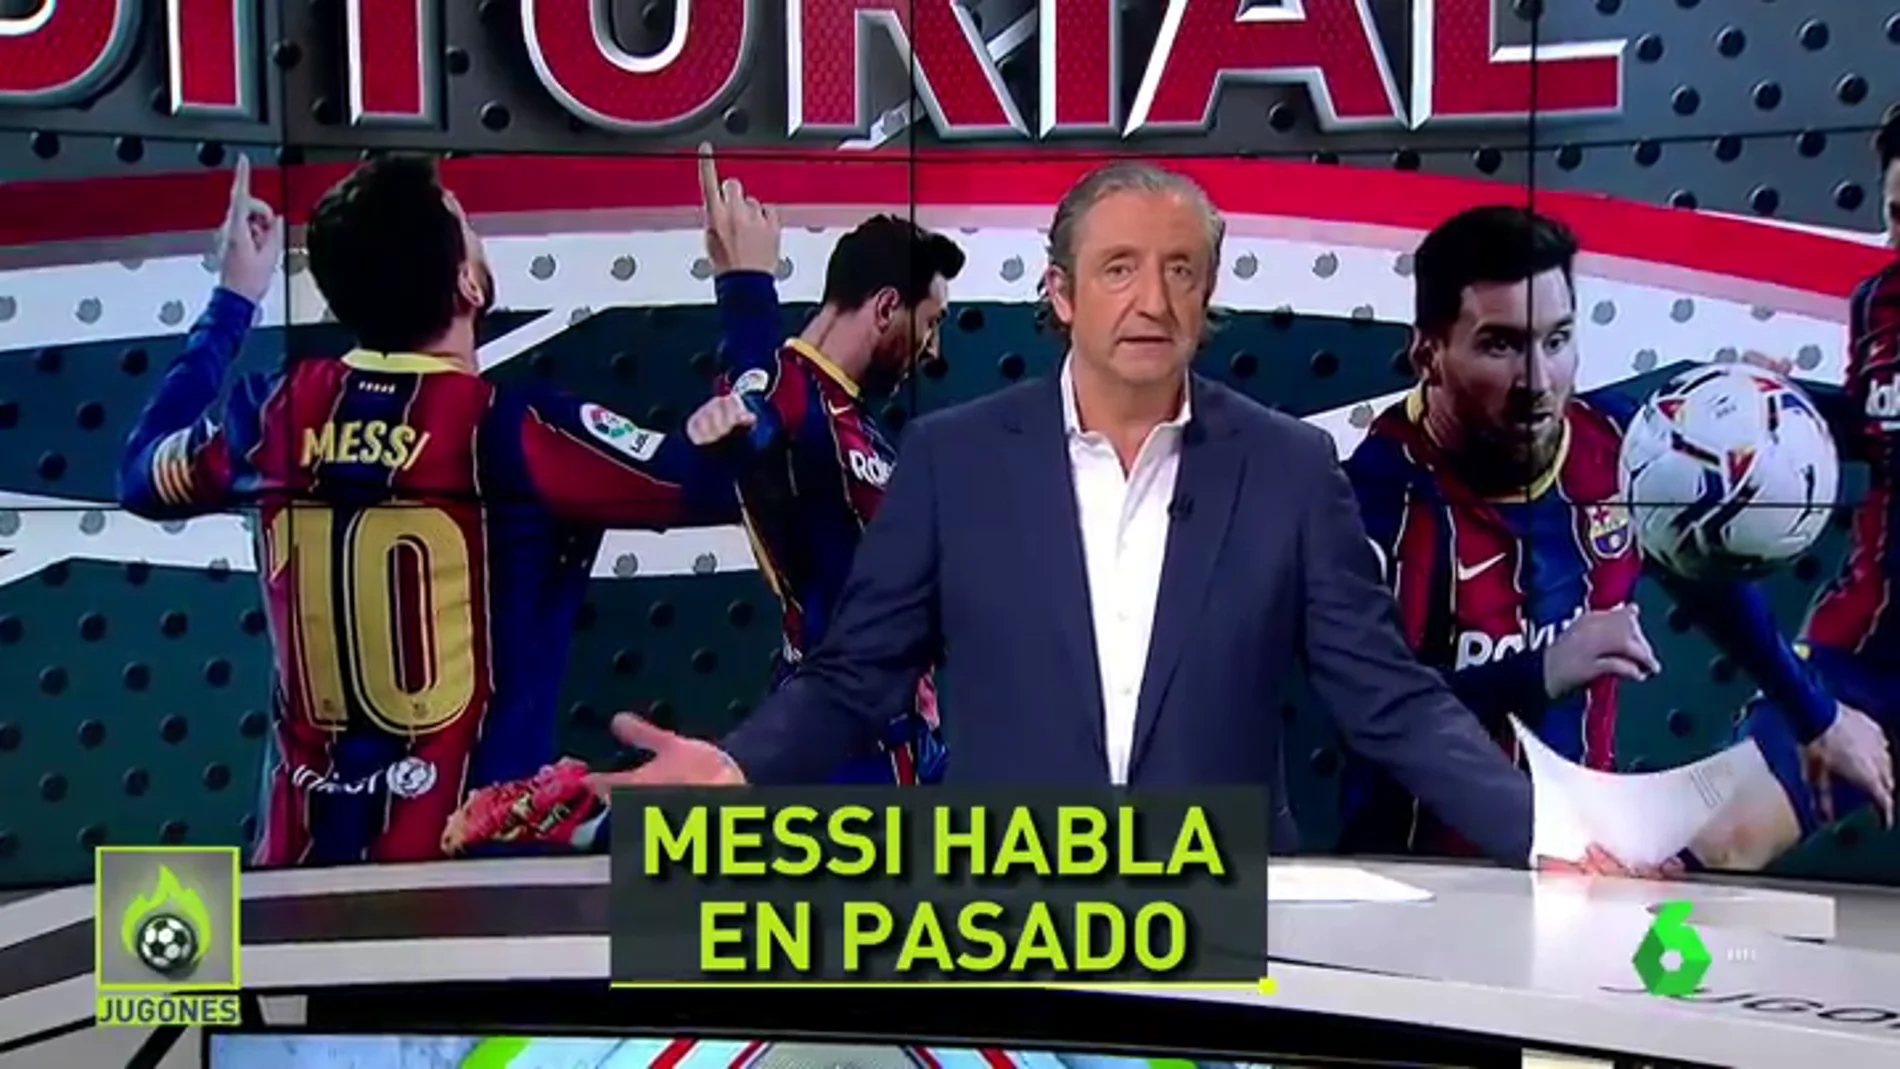 Pedrerol. "Messi guarda el mensaje ilusionante para el domingo, cuando será el jugador con más partidos en la historia del Barça"